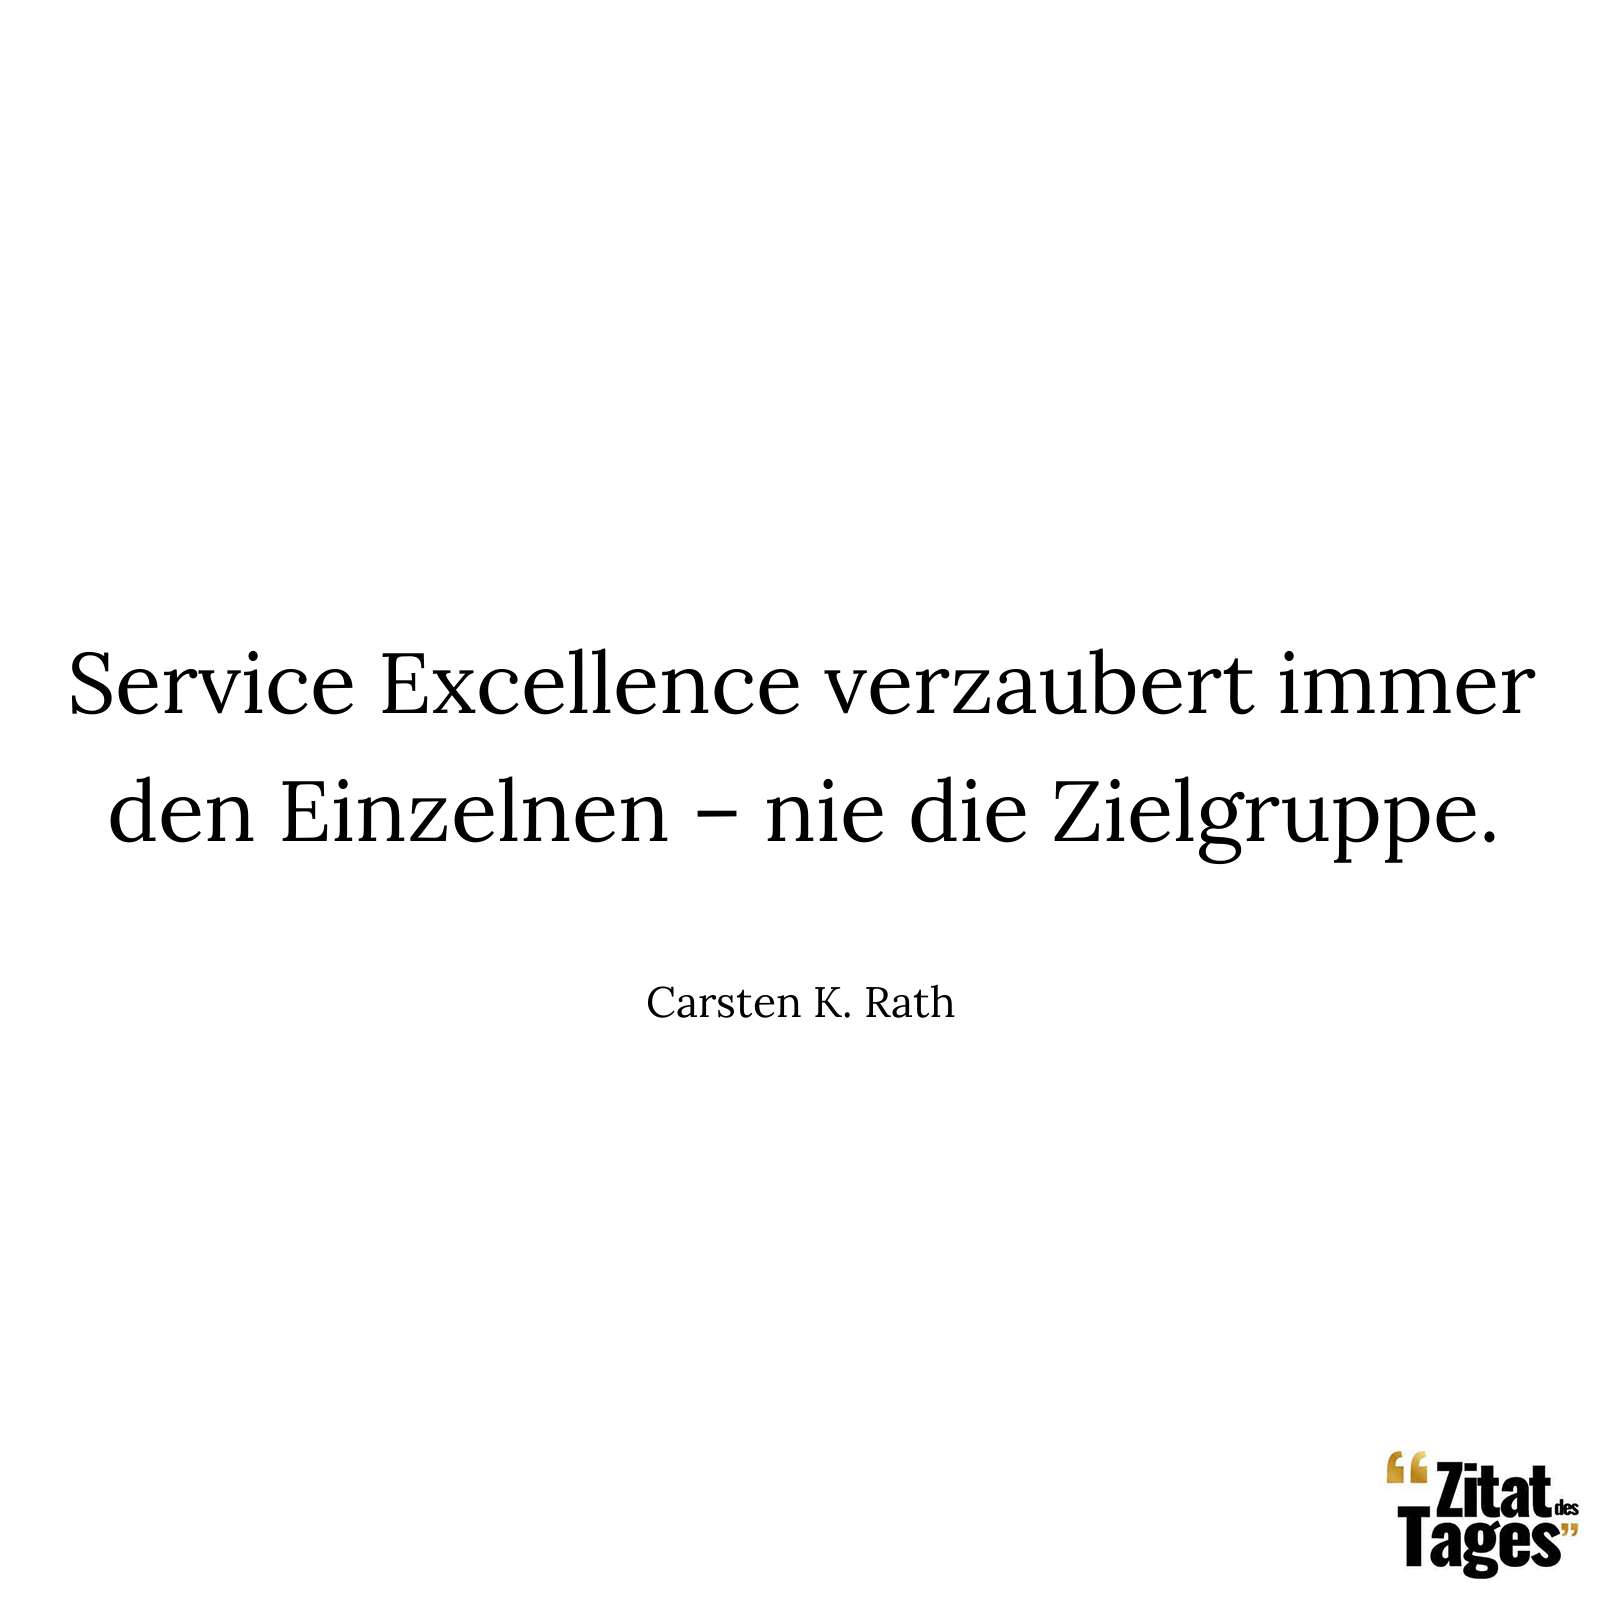 Service Excellence verzaubert immer den Einzelnen – nie die Zielgruppe. - Carsten K. Rath